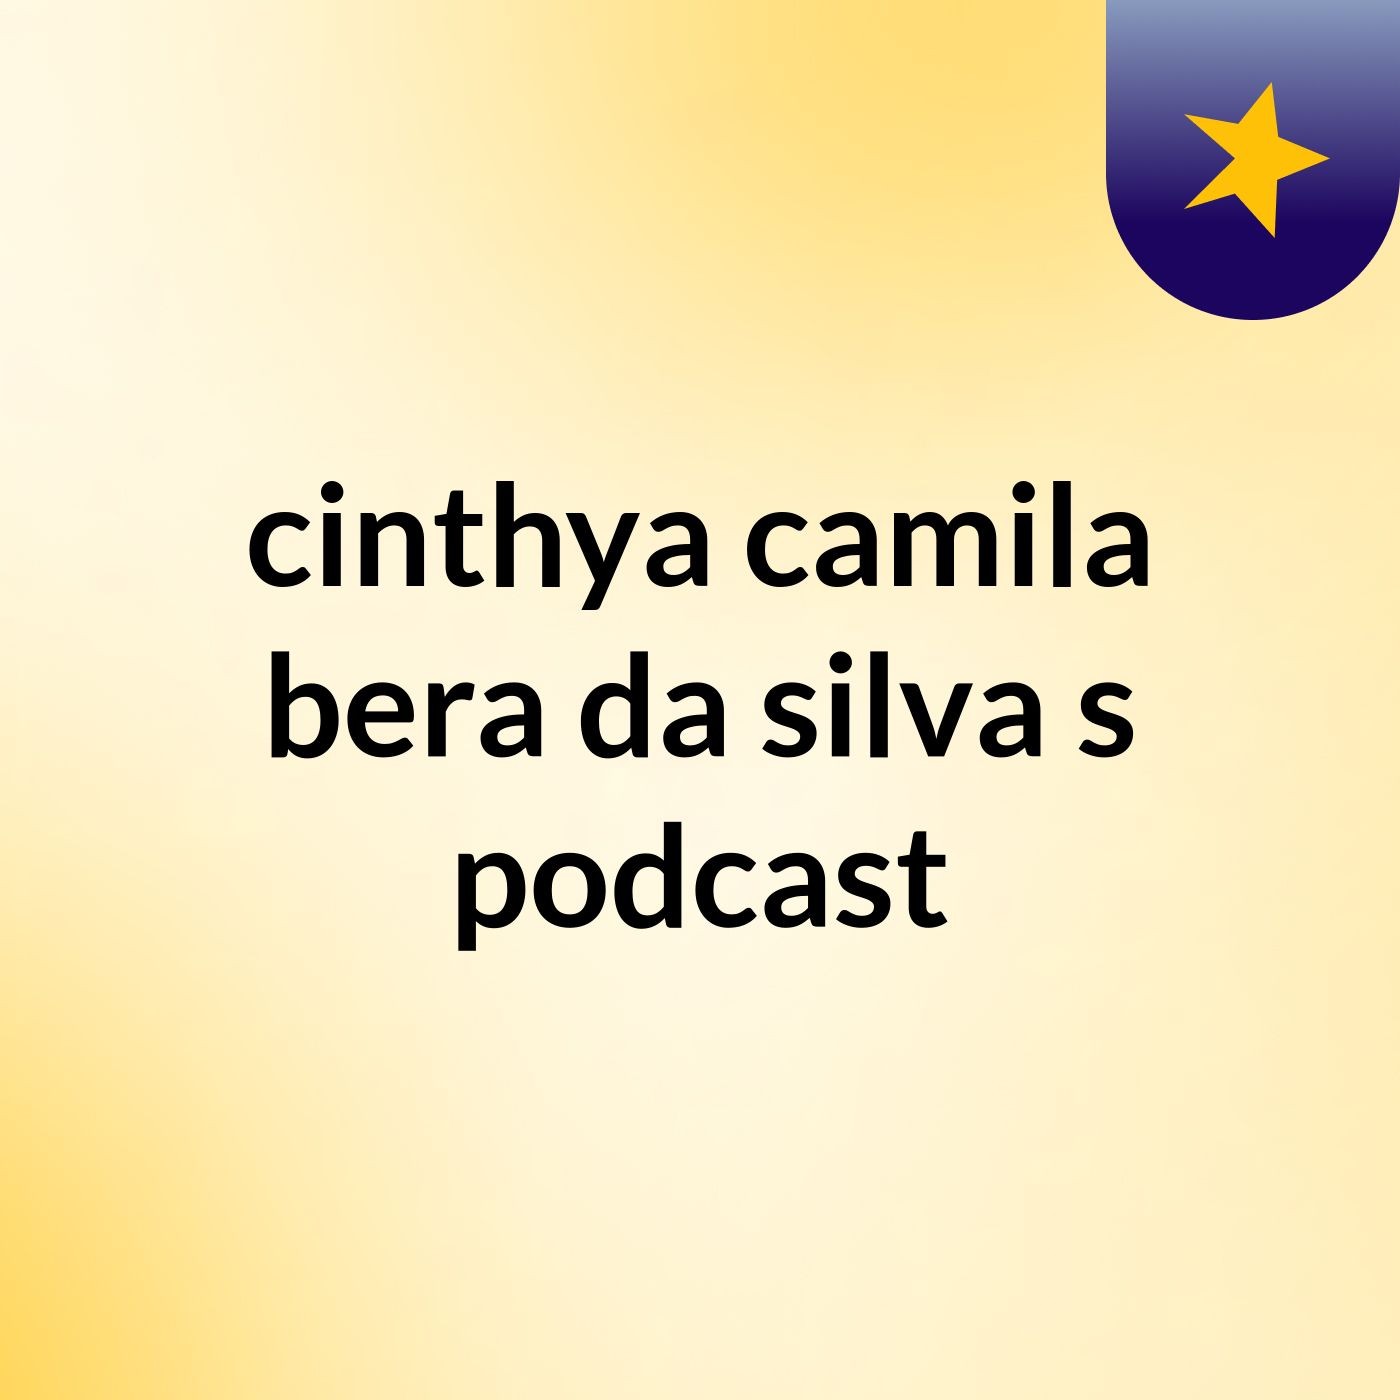 cinthya camila bera da silva's podcast